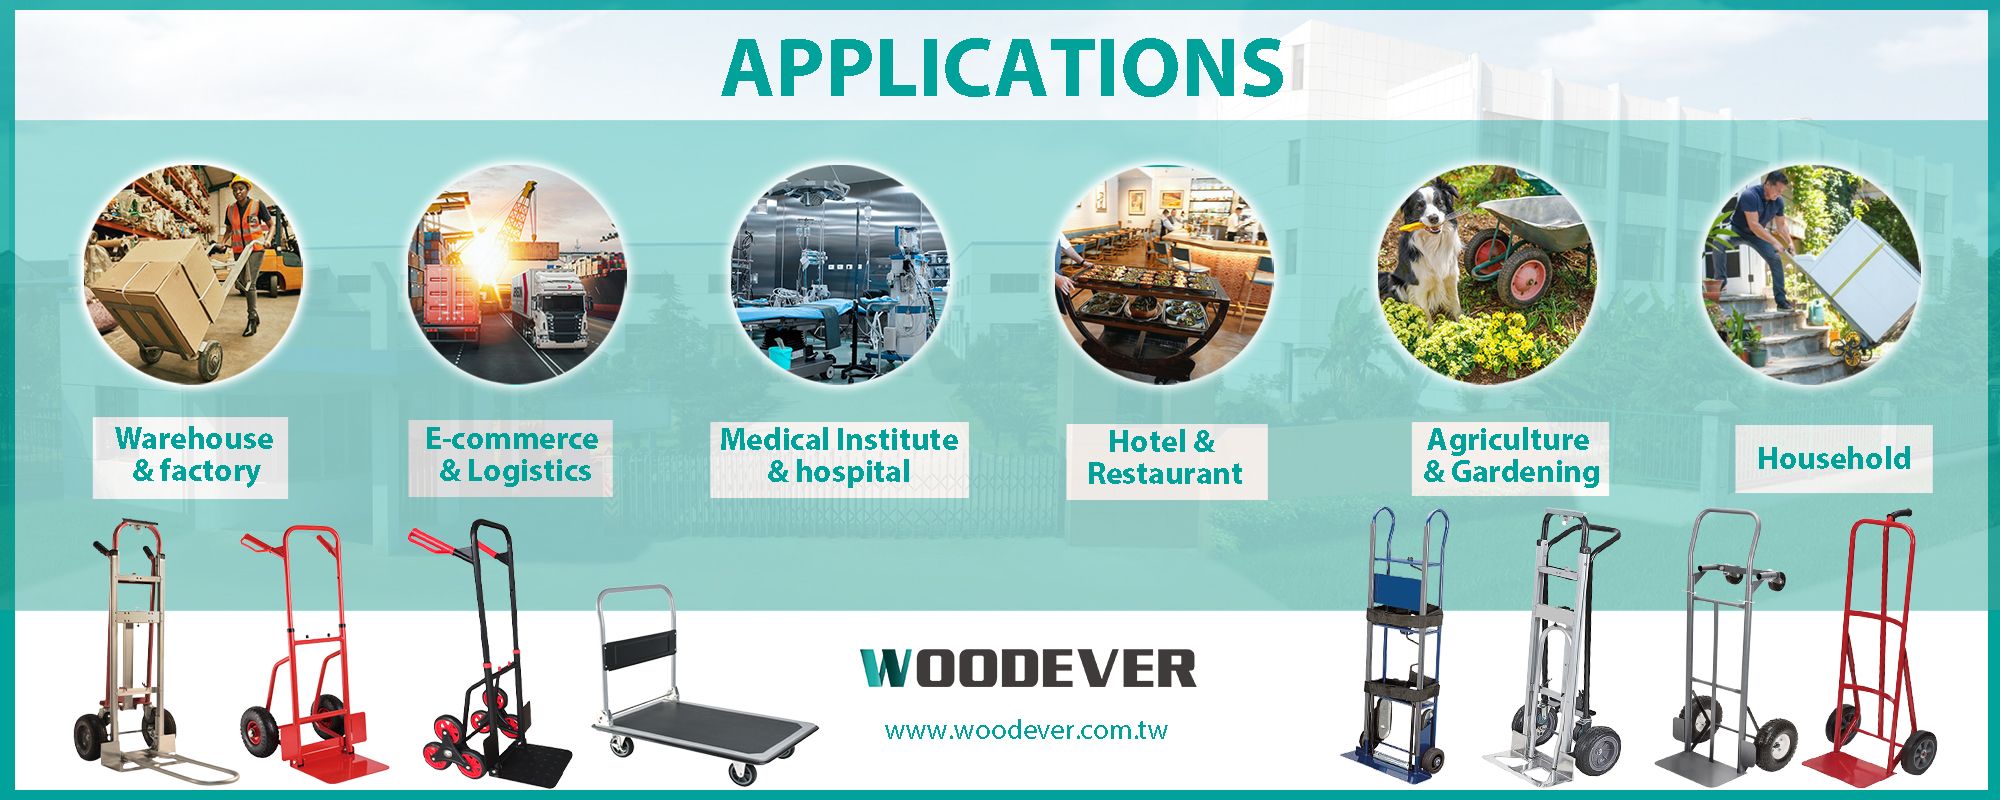 Handtrucktoepassingen in verschillende industrieën zoals logistiek, medisch, hotel en restaurant